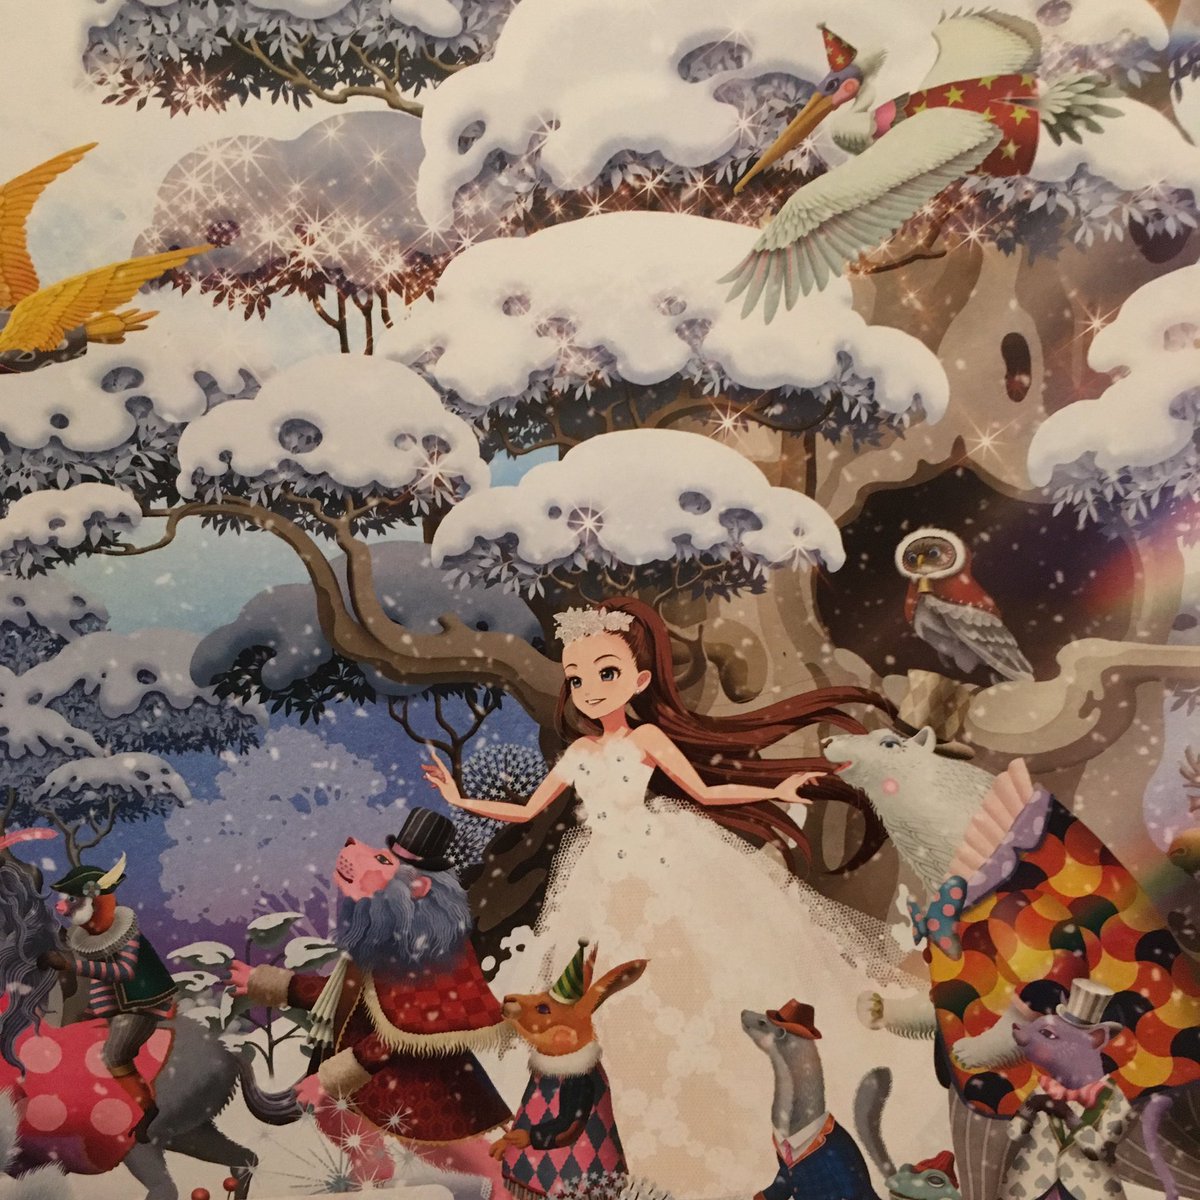 人形首 墨蔵 Na Twitteru セブンイレブンのクリスマスパンフめちゃかわいいイラスト 安室奈美恵 だから 貰ってくるといいよ